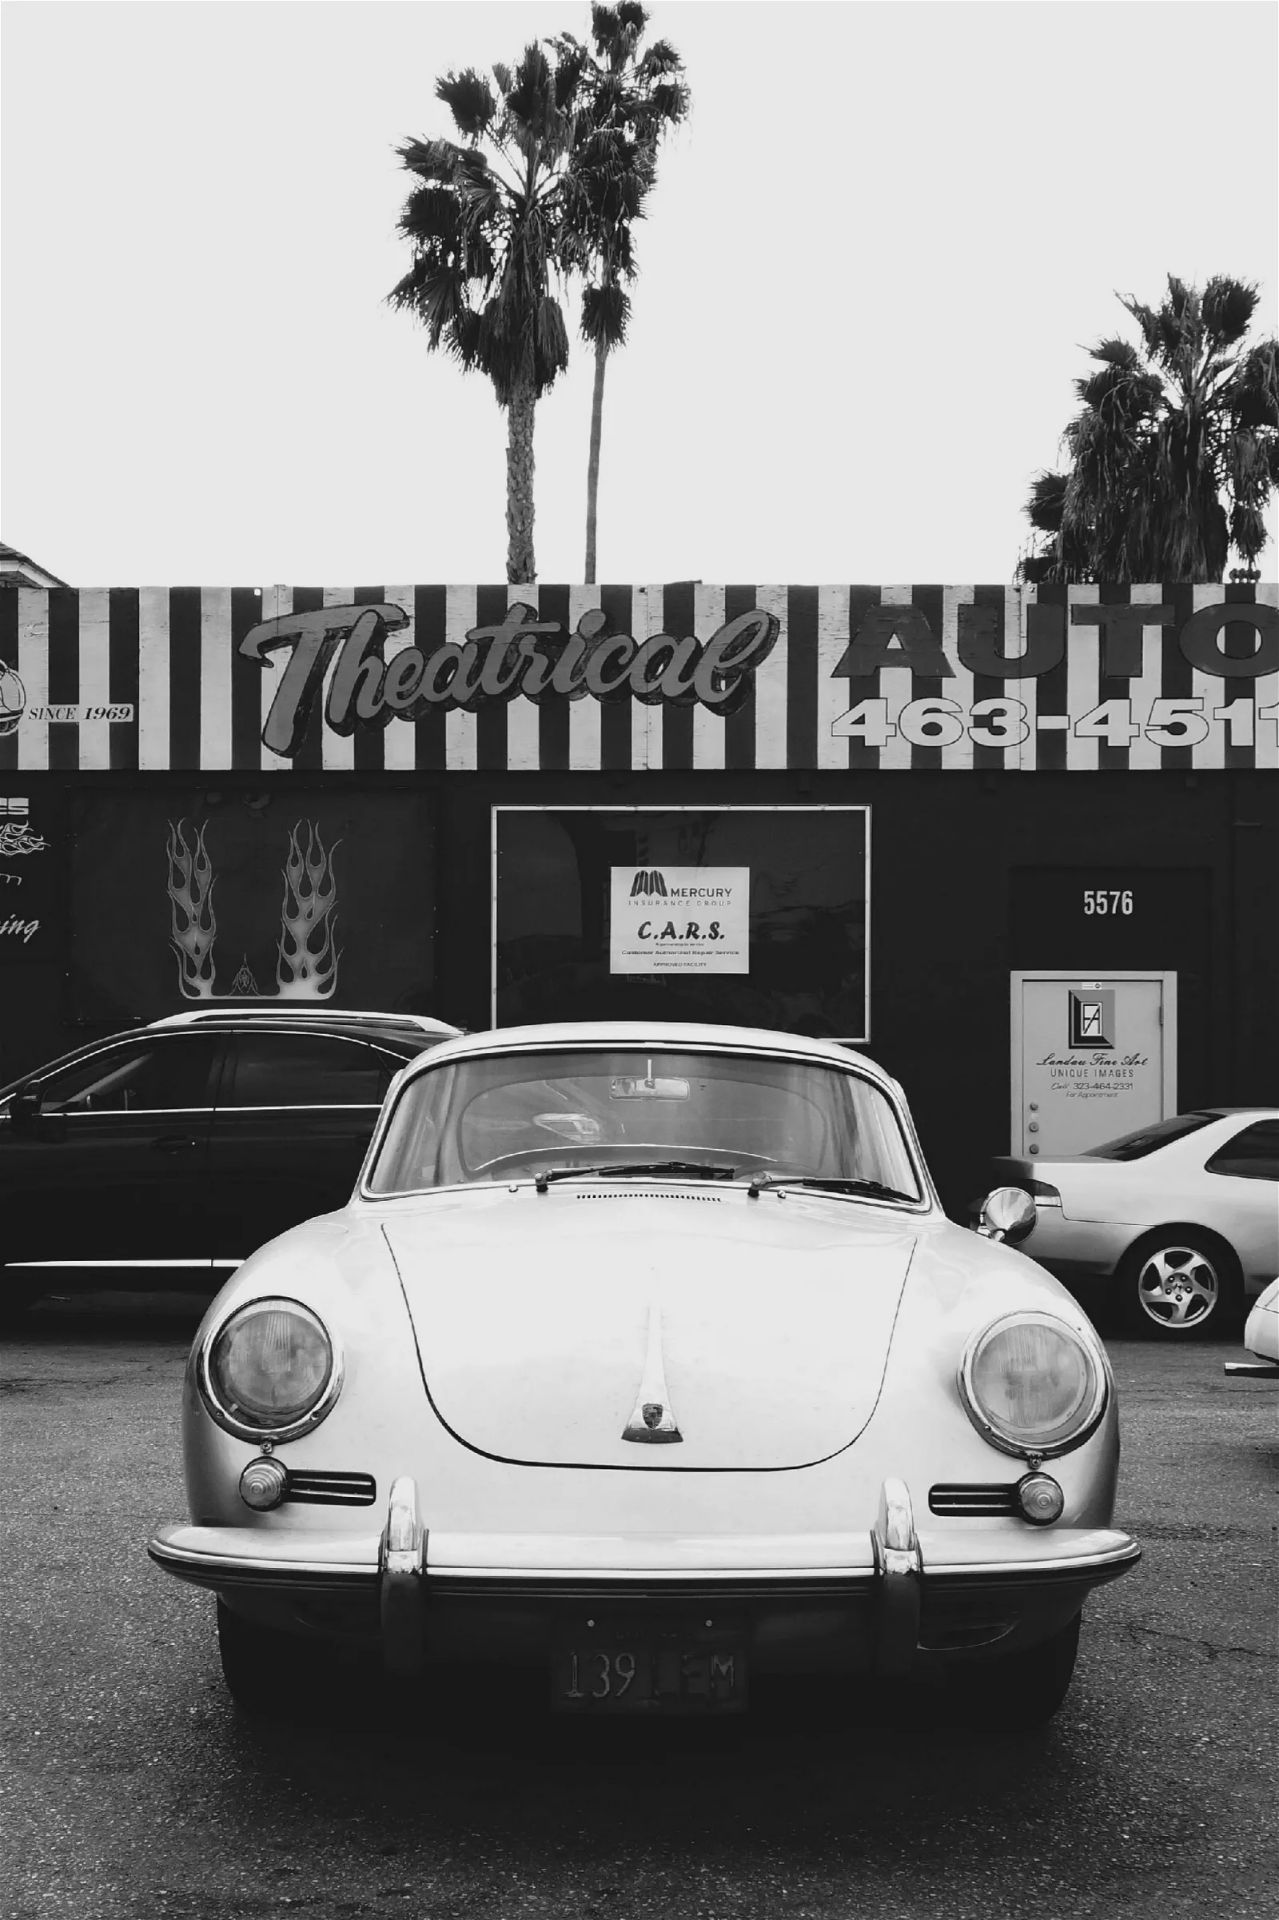 Porsche 356 "1960's" Large Print